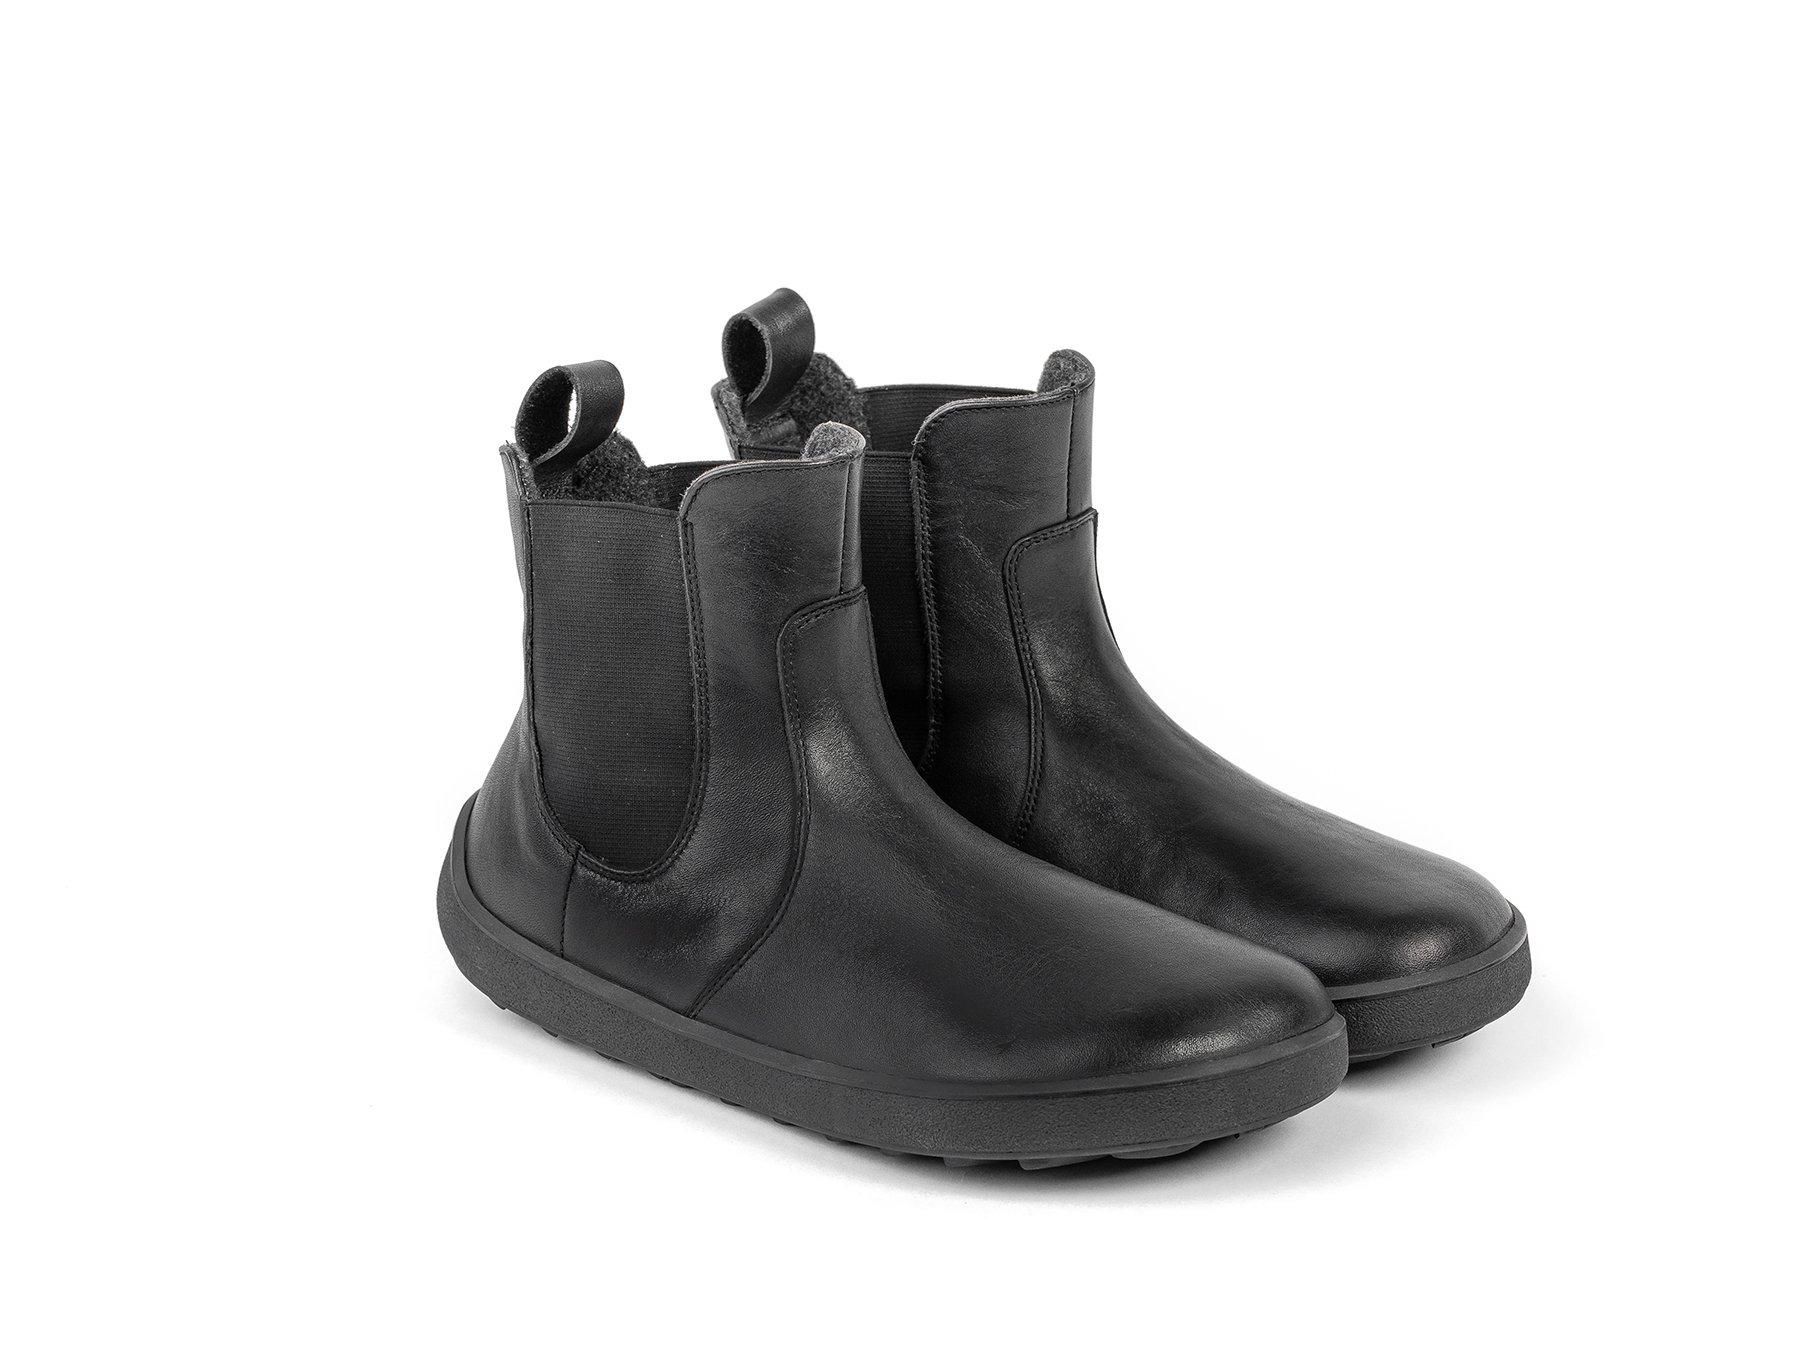 Barefoot Boots Be Lenka Entice - All Black | Be Lenka